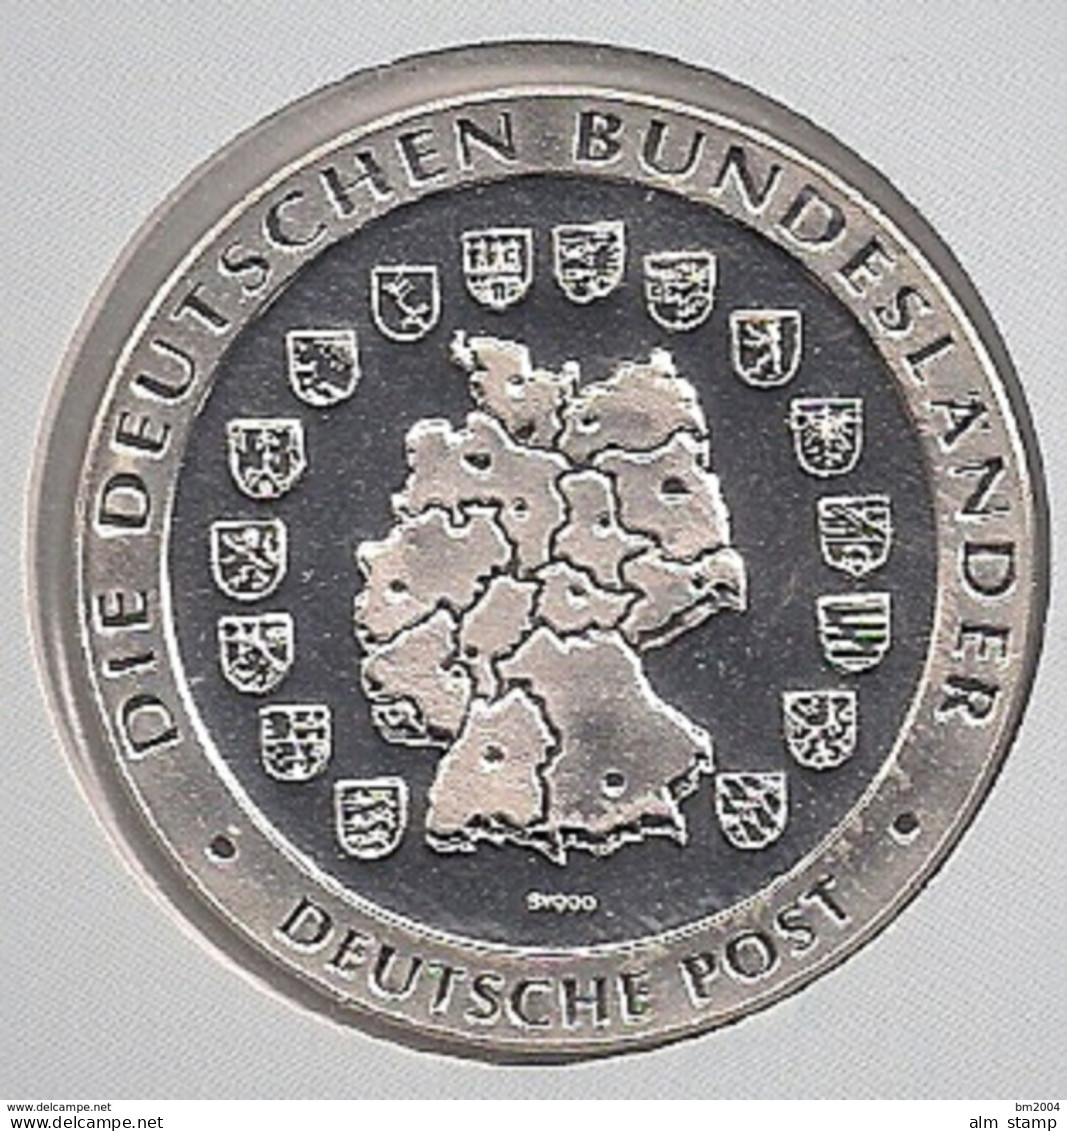 999/1000 Silber Medaille " Thüringen    " PP   36 Mm DMR Rohgewicht : 14 G Prägung : Hochrelief - Elongated Coins